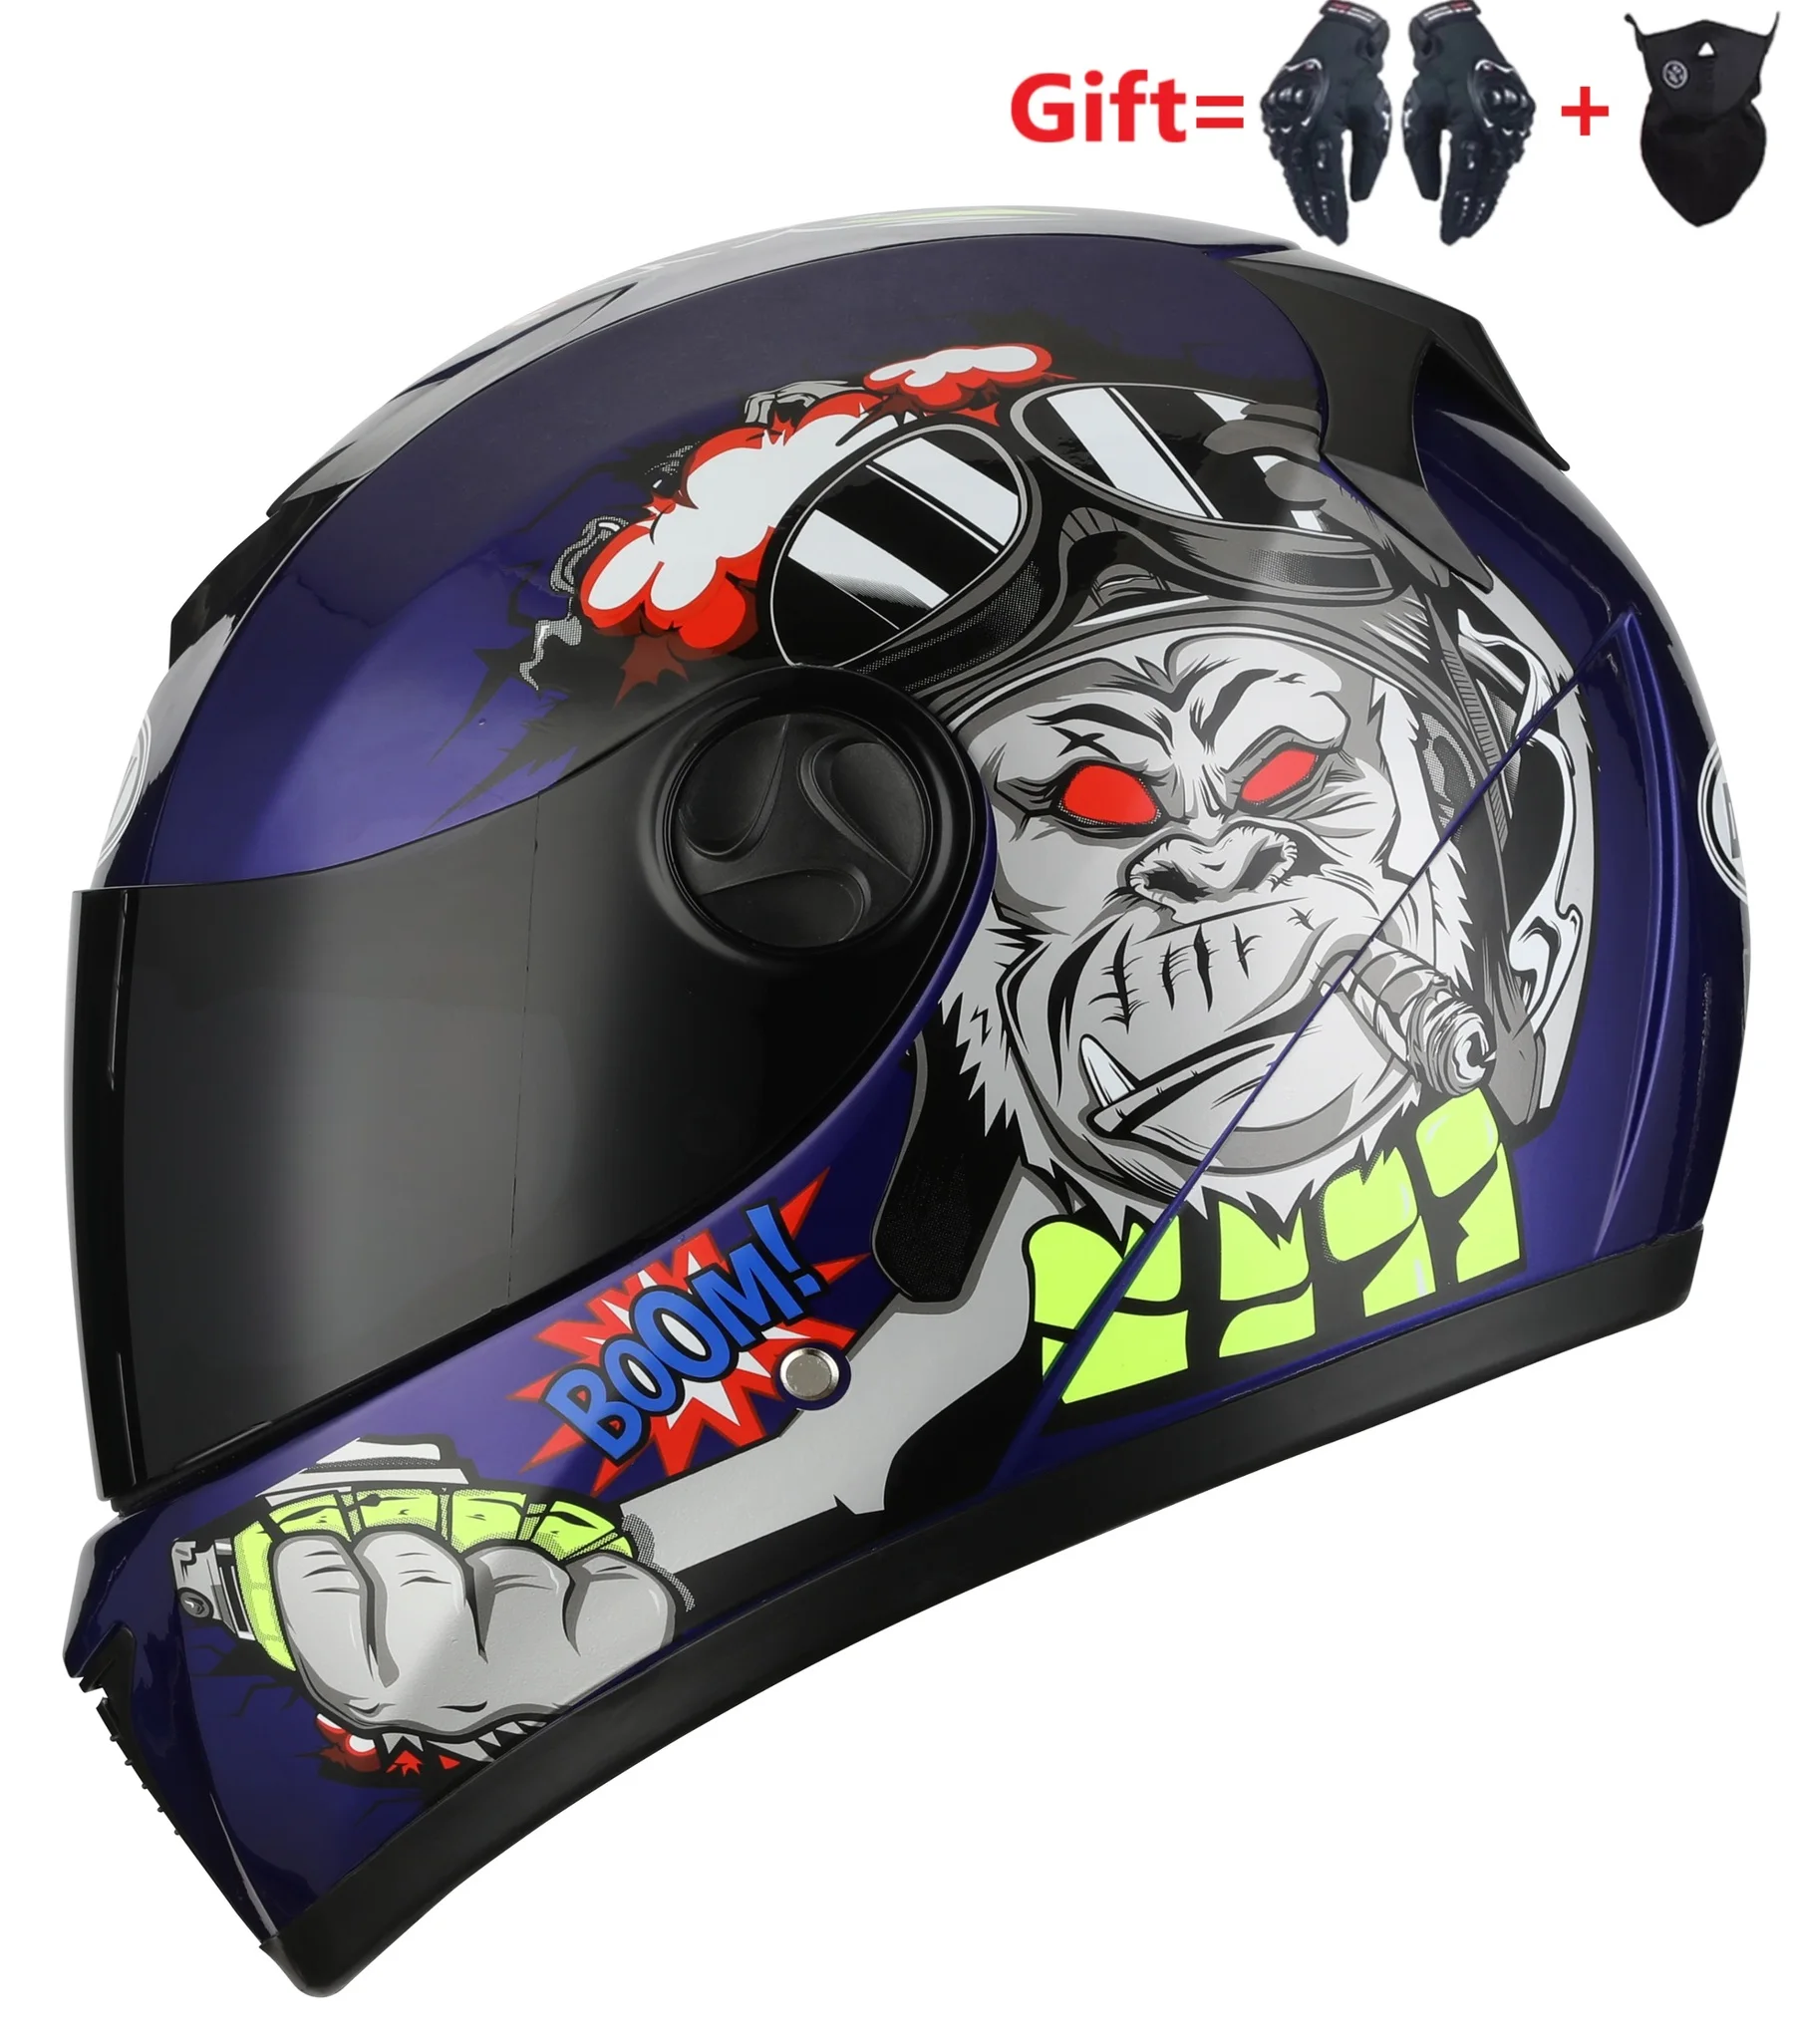 

Мотоциклетный шлем, матовый черный шлем с двойными линзами, для мотокросса, мотокросса, квадроцикла, все лицо, для взрослых, 2 подарка